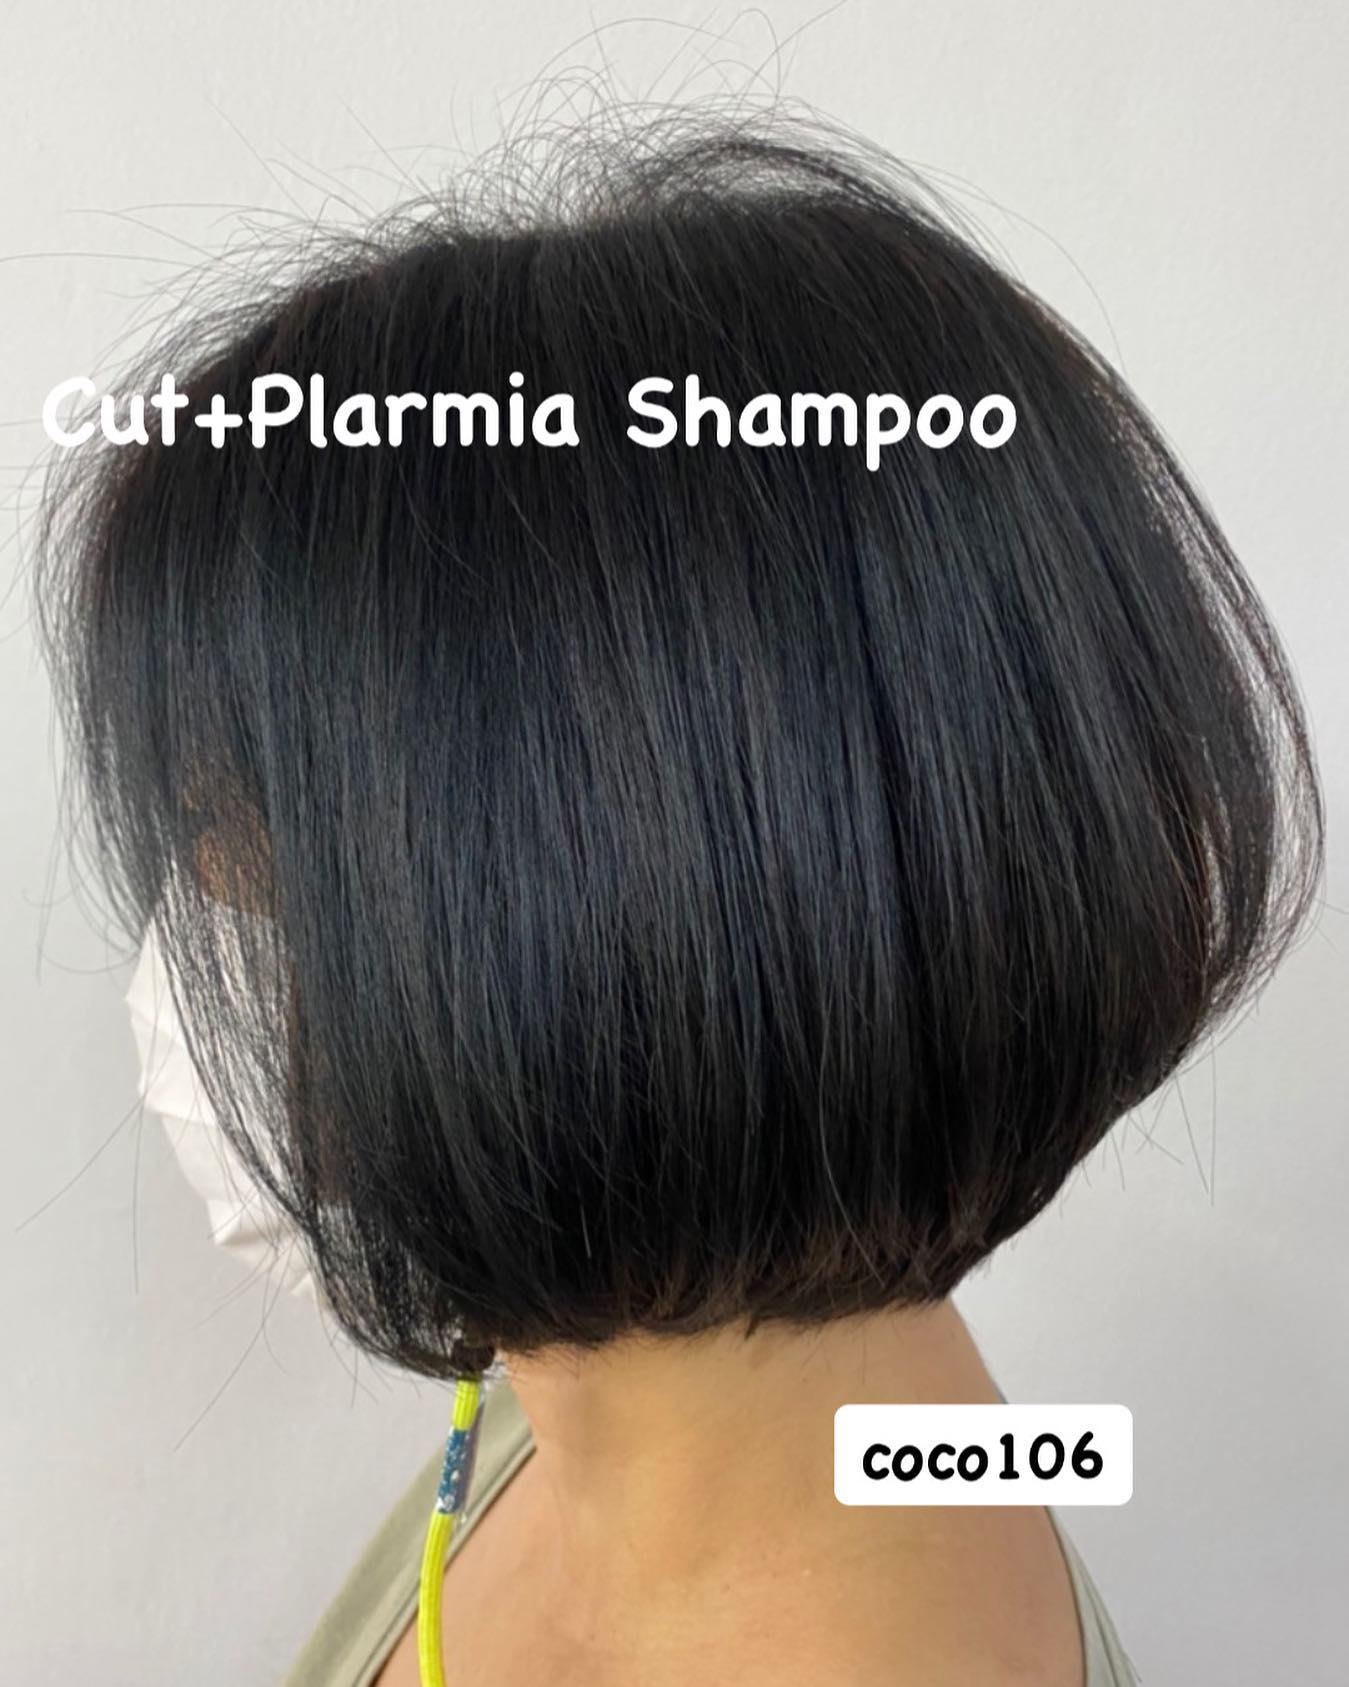 Cut + Plarmia Shampoo
ทำผมโดยช่างญา ช่างทำผมสไตล์ญี่ปุ่น '  สำหรับลูกค้าที่จองคิว เข้ามาใช้บริการทำผมที่ร้านวันนนี้ ที่ร้านมี ทาโกะยากิ ให้ลูกค้า
เนื่องจากวันนนี้เป็นวัน106 ของทางร้านค่ะ 
รีบจองเข้ามาเยอะๆนะคะ ขนมมีจำนวนจำกัดค่ะ  ร้านเปิดให้บริการ 9.00-18.30 
ขอบคุณลูกค้าทุกท่านที่เข้ามาใช้บริการค่ะ
สอบถามเพิ่มเติมหรือจองคิวทำผม
ได้ที่เบอร์โทรศัพ 02-662-7106  อีก1ช่องทางการติดต่อ, เช็คโปรโมชั่นทางร้านหรือจองคิวทำผม สามารถแอดไลน์ของทางร้านได้เลยค่ะ
LINE account
https://lin.ee/3Cm0Ksiac  #106hair #coco106 #sukhumvit39 #ร้านทำผม106coco #ร้านทำผม106 #สระโซดาสปา #ไฮไลท์สีผม #ทำสีผม #ร้านทำผม #ร้านทำผมในกรุงเทพ #ร้านเสริมสวยในกรุงเทพ